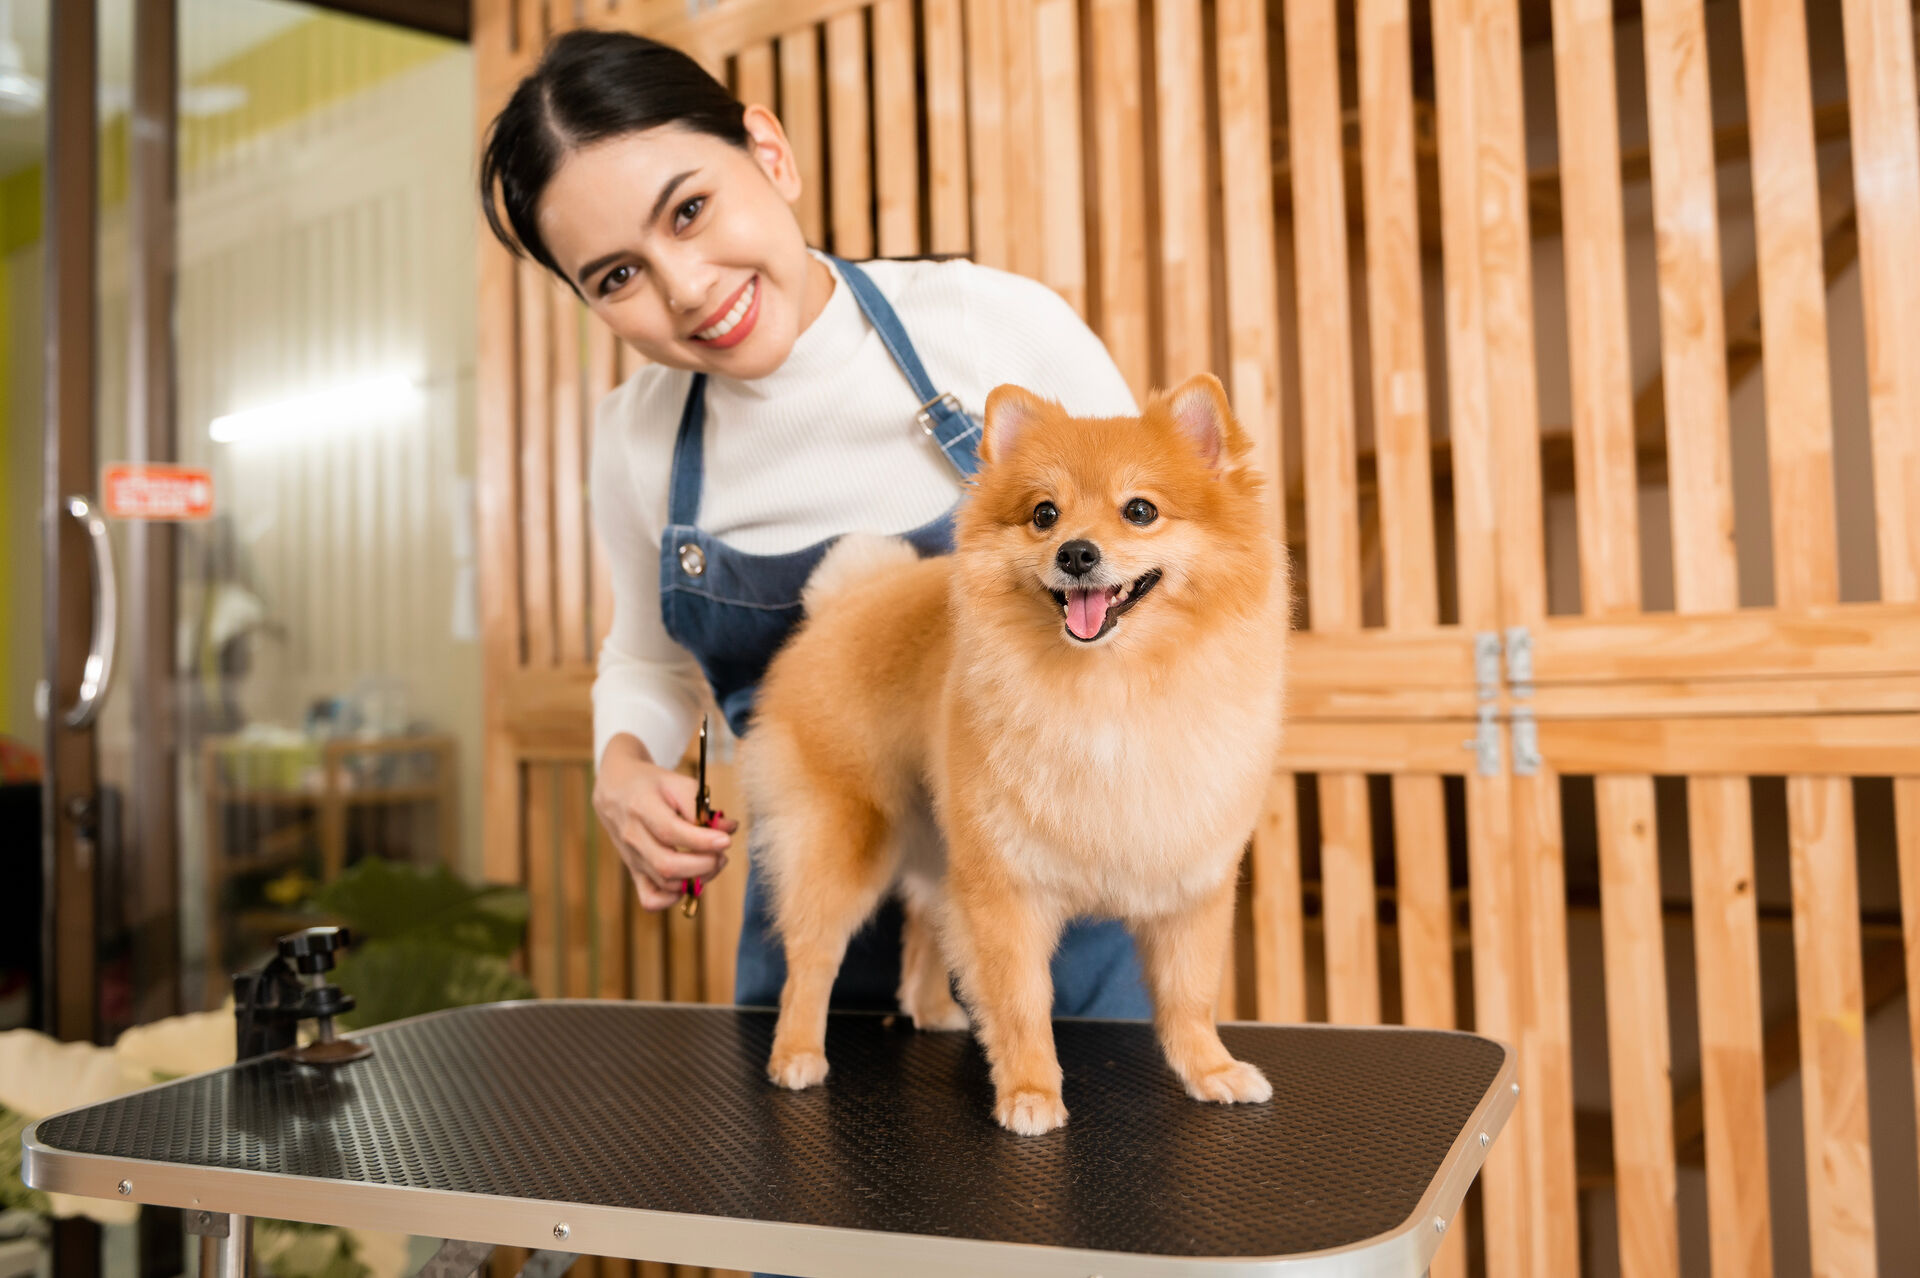  Ein Hund wartet bei einer Hundefriseurin auf dem Frisiertisch – beide lächeln in die Kamera.